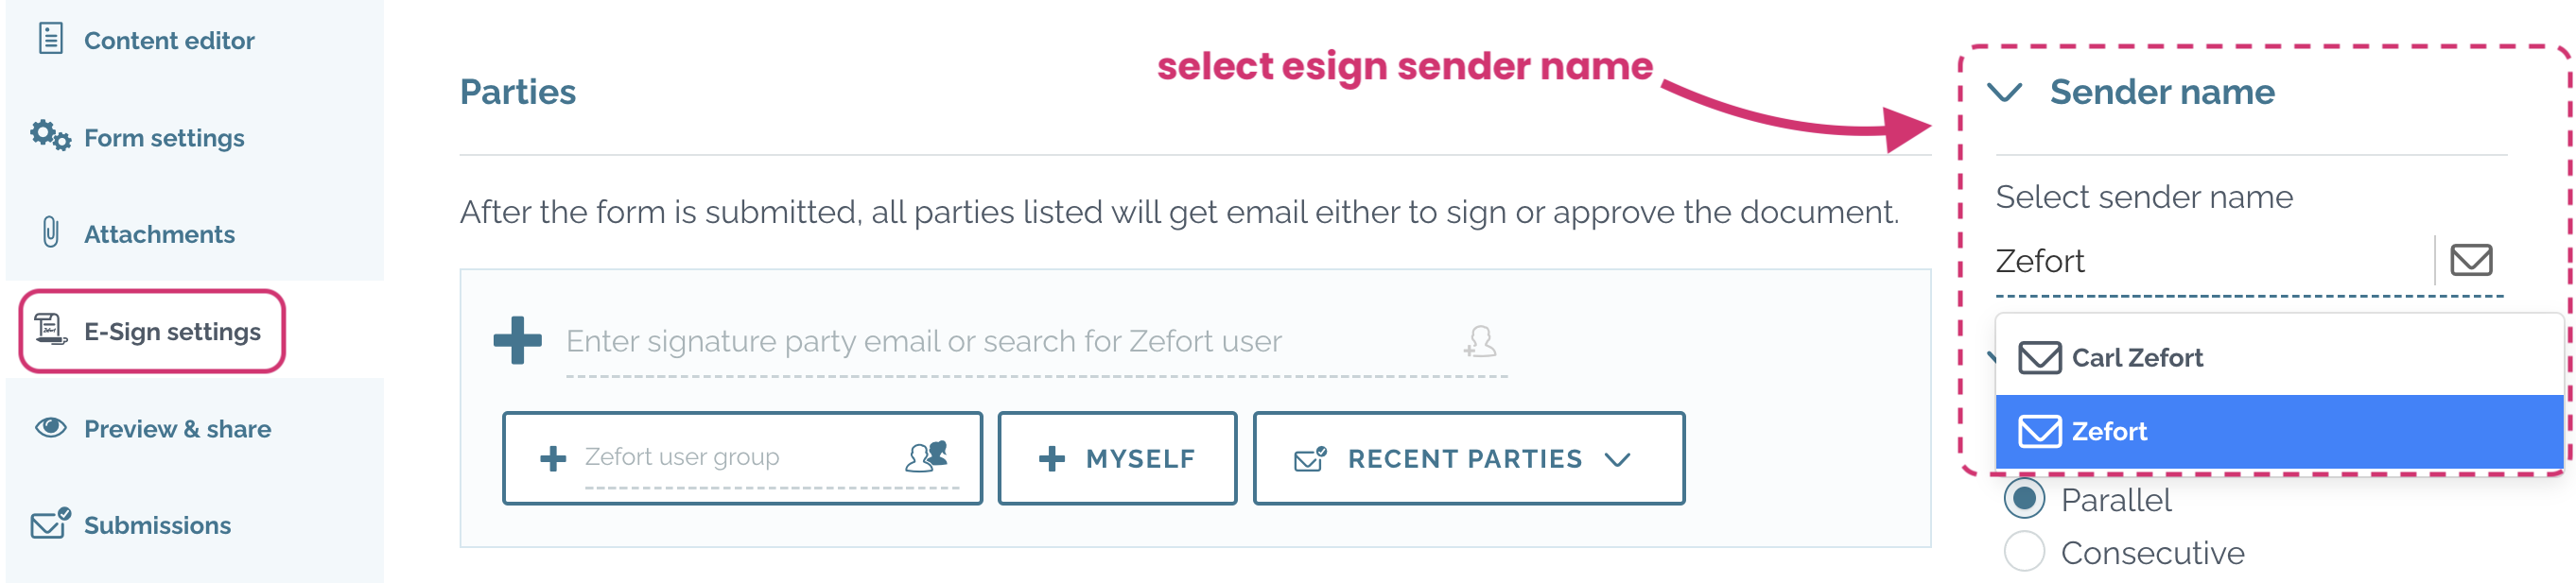 zefort forms - select sender name